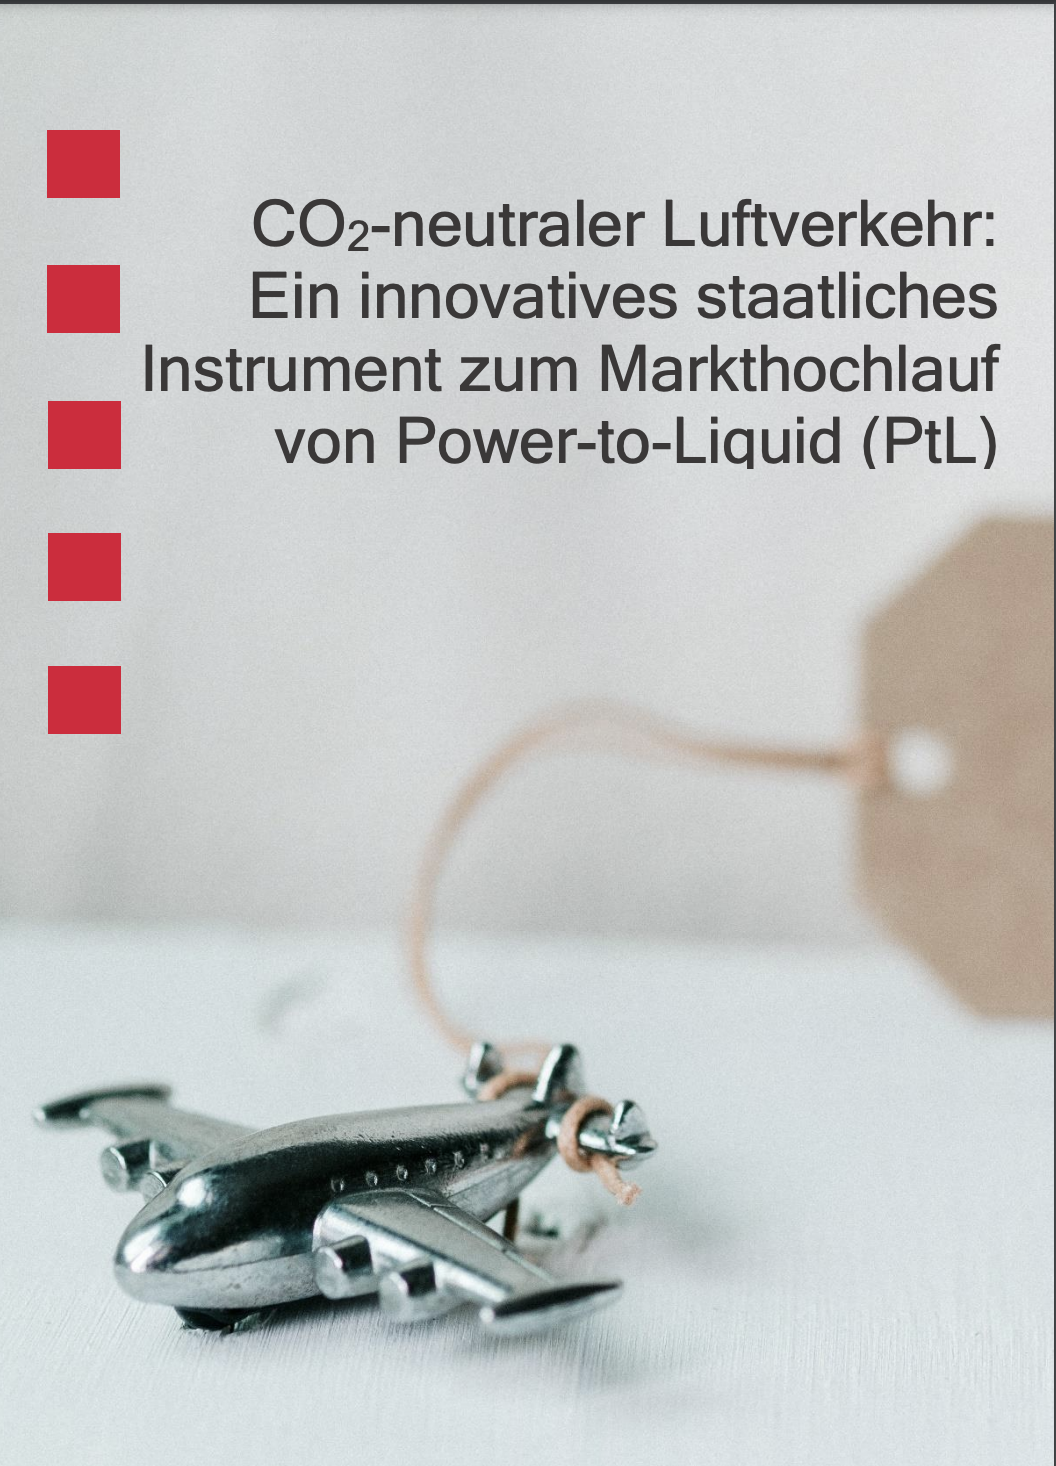 CO2-neutraler Luftverkehr: Ein innovatives staatliches Instrument zum Markthochlauf von Power-to-Liquid (PtL)